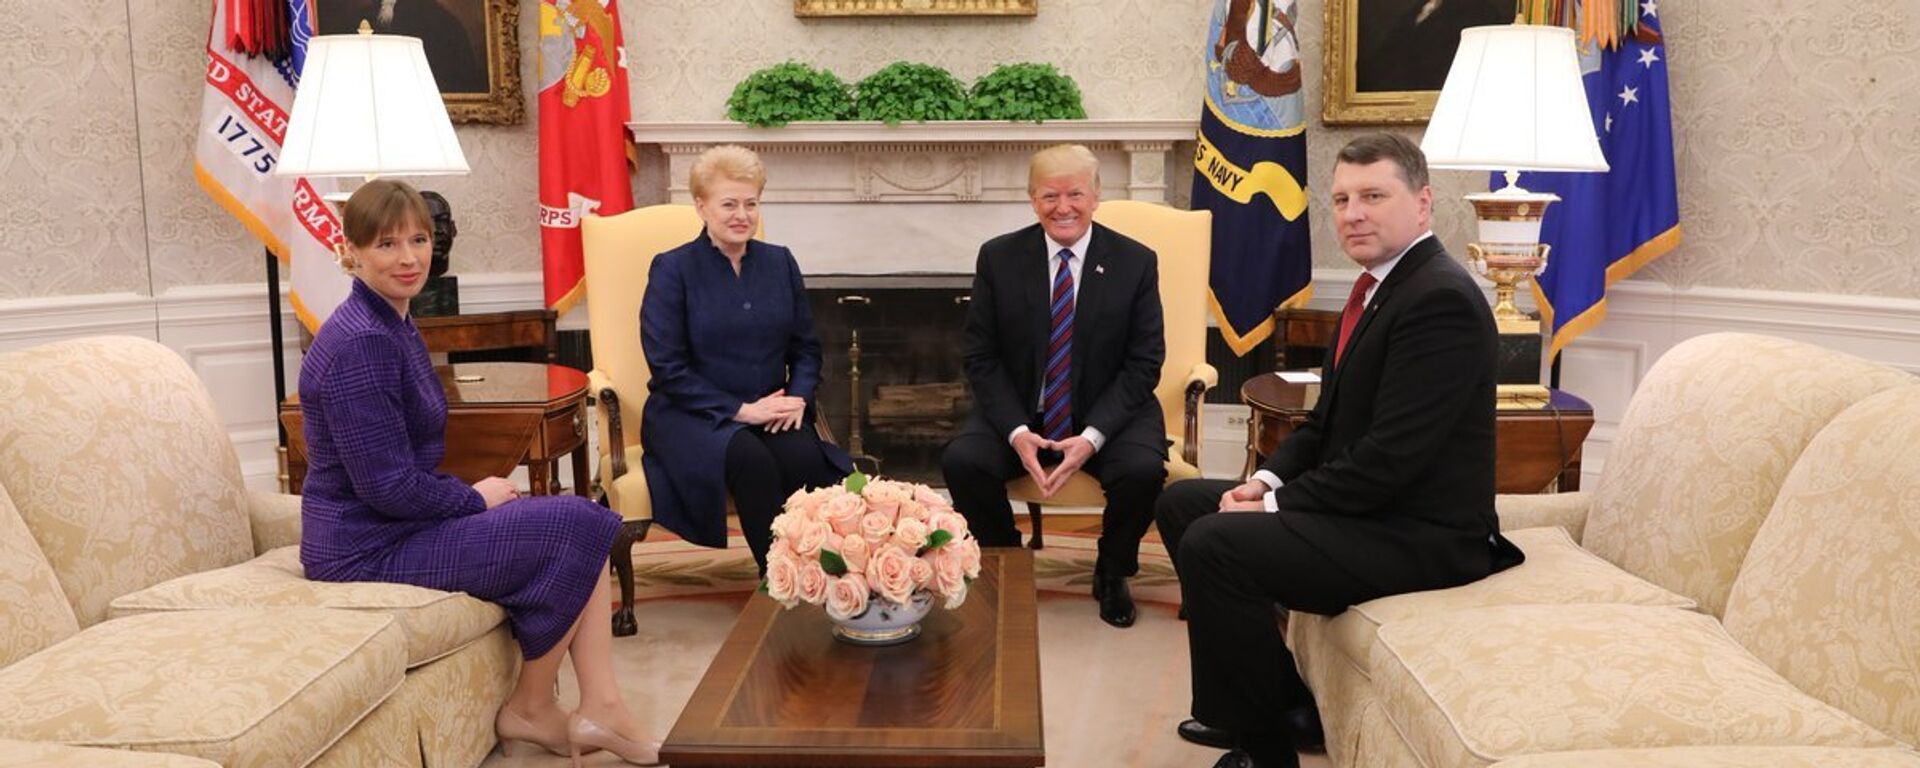 Встреча президентов стран Балтии с Дональдом Трампом в Вашингтоне - Sputnik Latvija, 1920, 18.05.2019